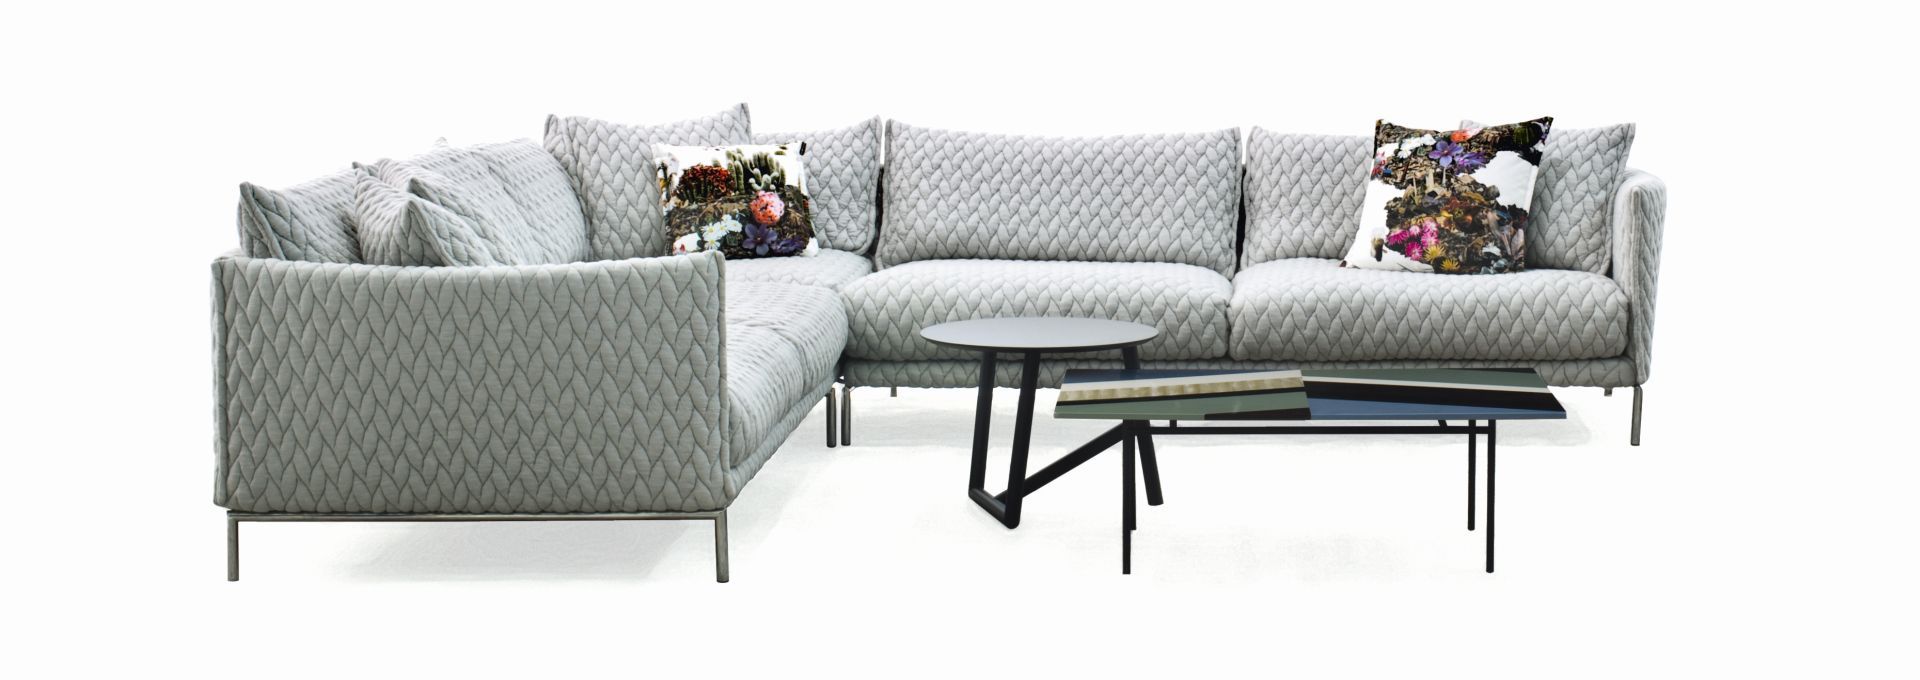 Sofa Gentry ma niesamowitą strukturę tkaniny i dostępna jest w gołębim odcieniu szarości. Fot. Galeria Wnętrza